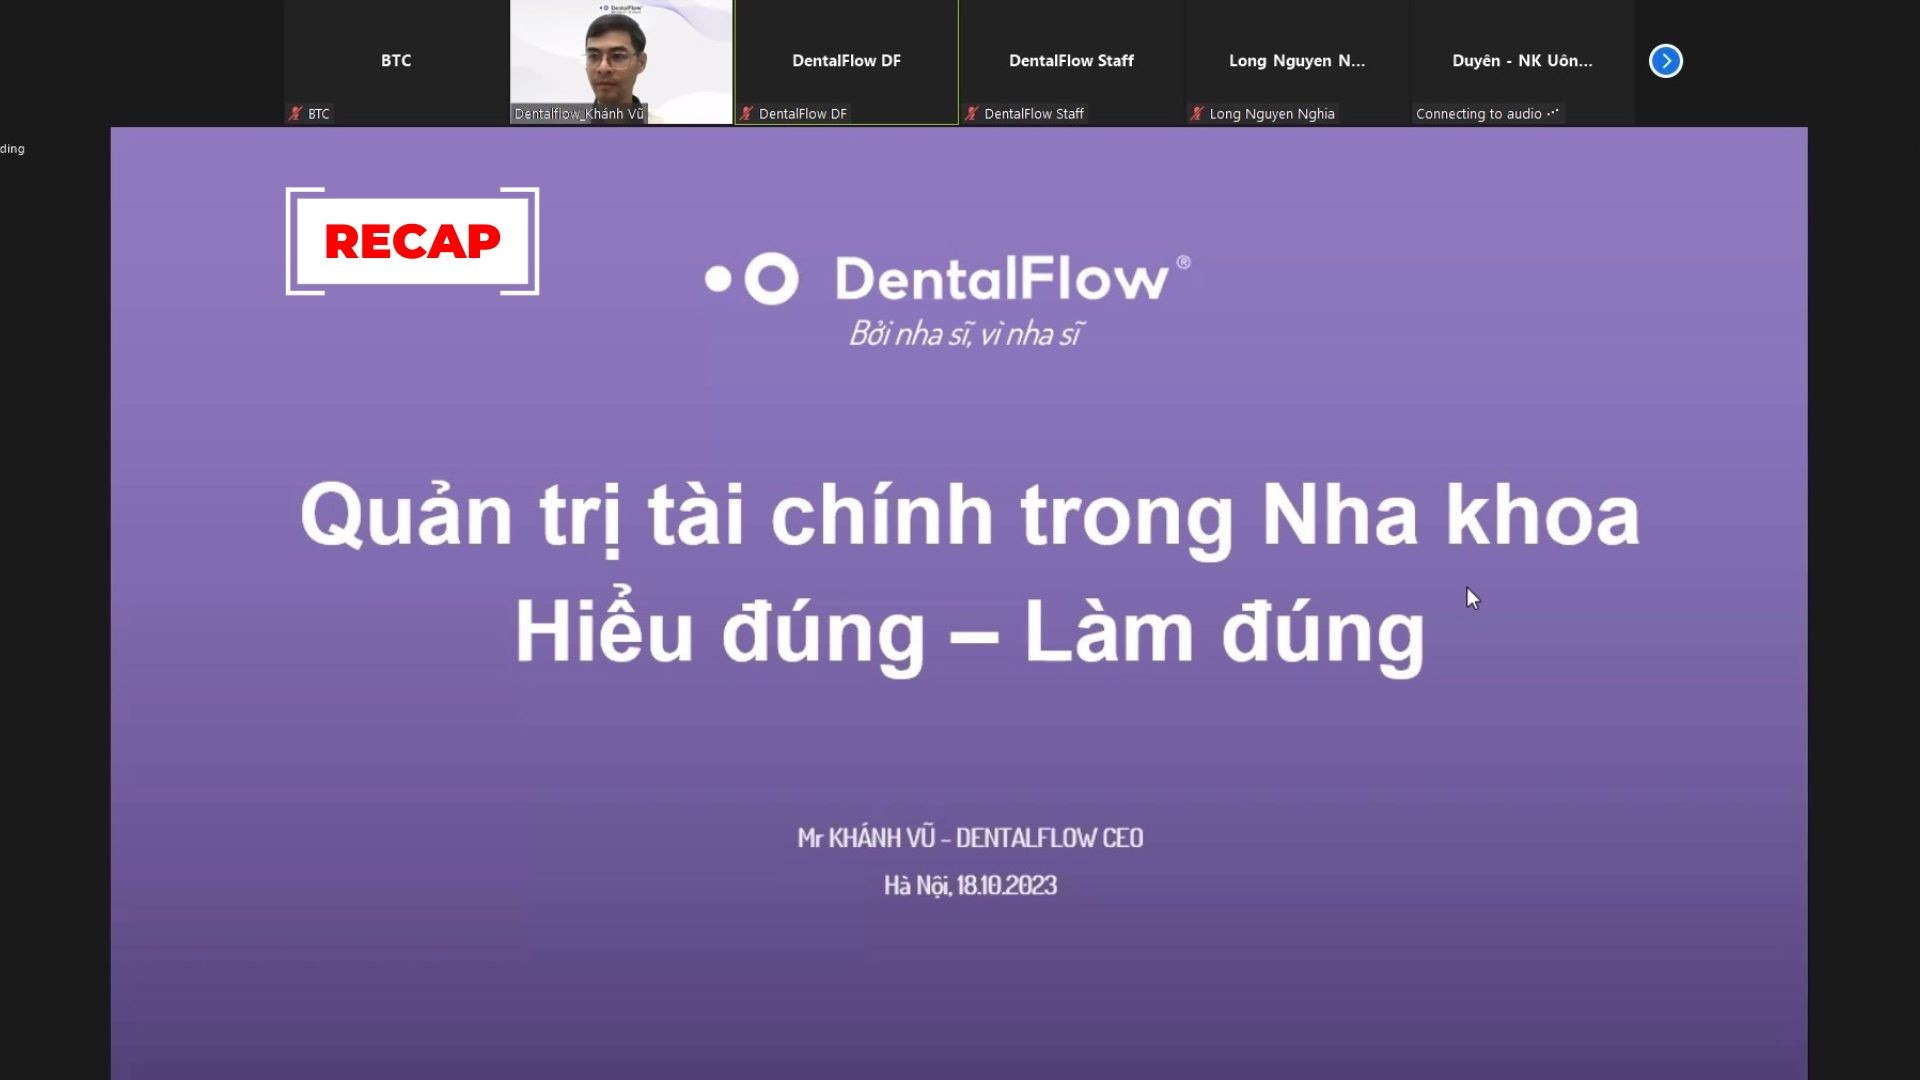 DentalFlow tổ chức thành công Webinar chủ đề Quản trị tài chính Nha khoa